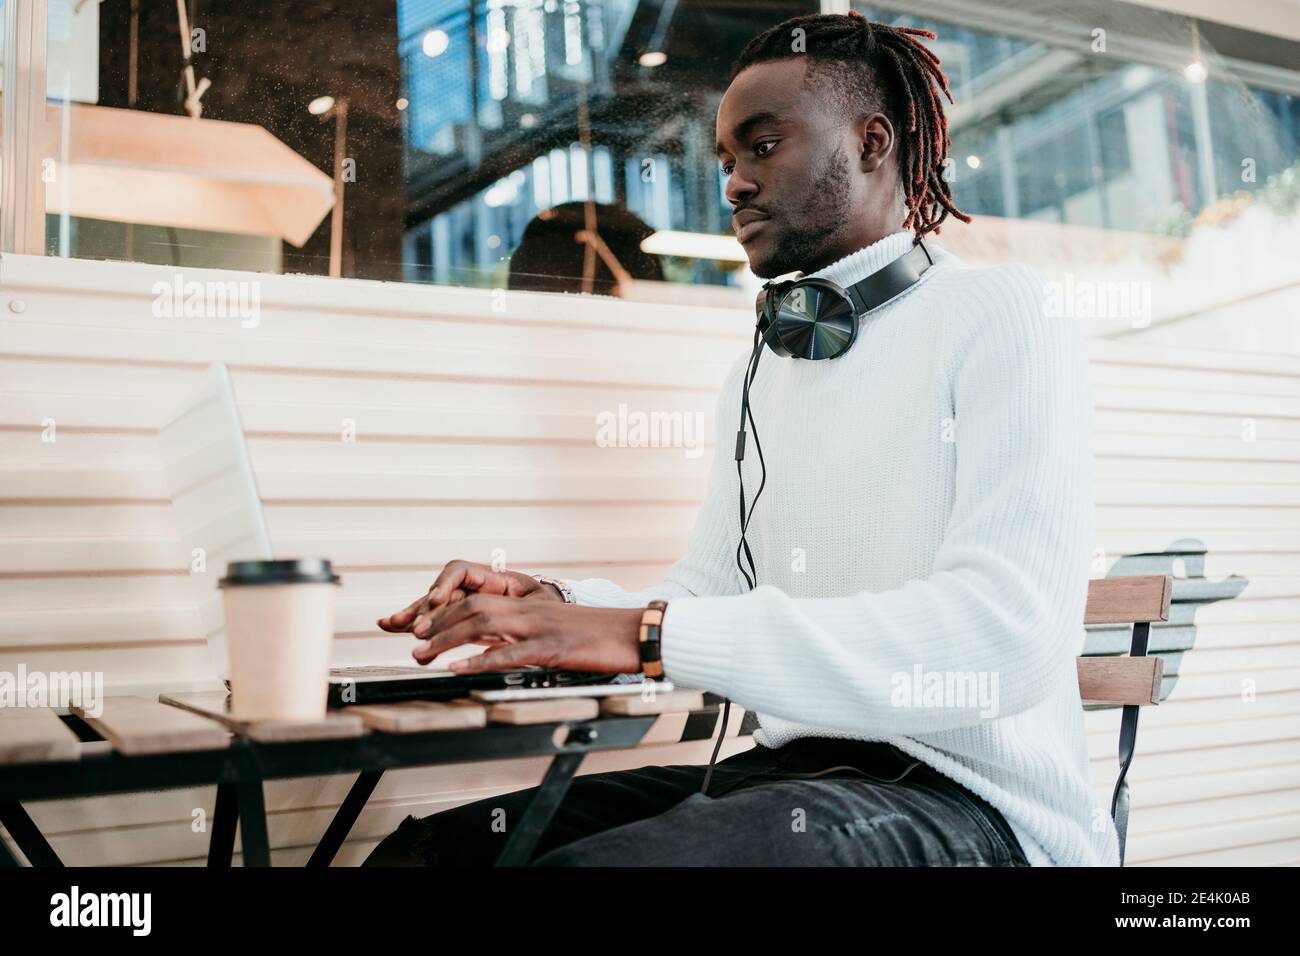 Homme d'affaires créatif avec une tasse à café jetable travaillant sur un ordinateur portable café Banque D'Images